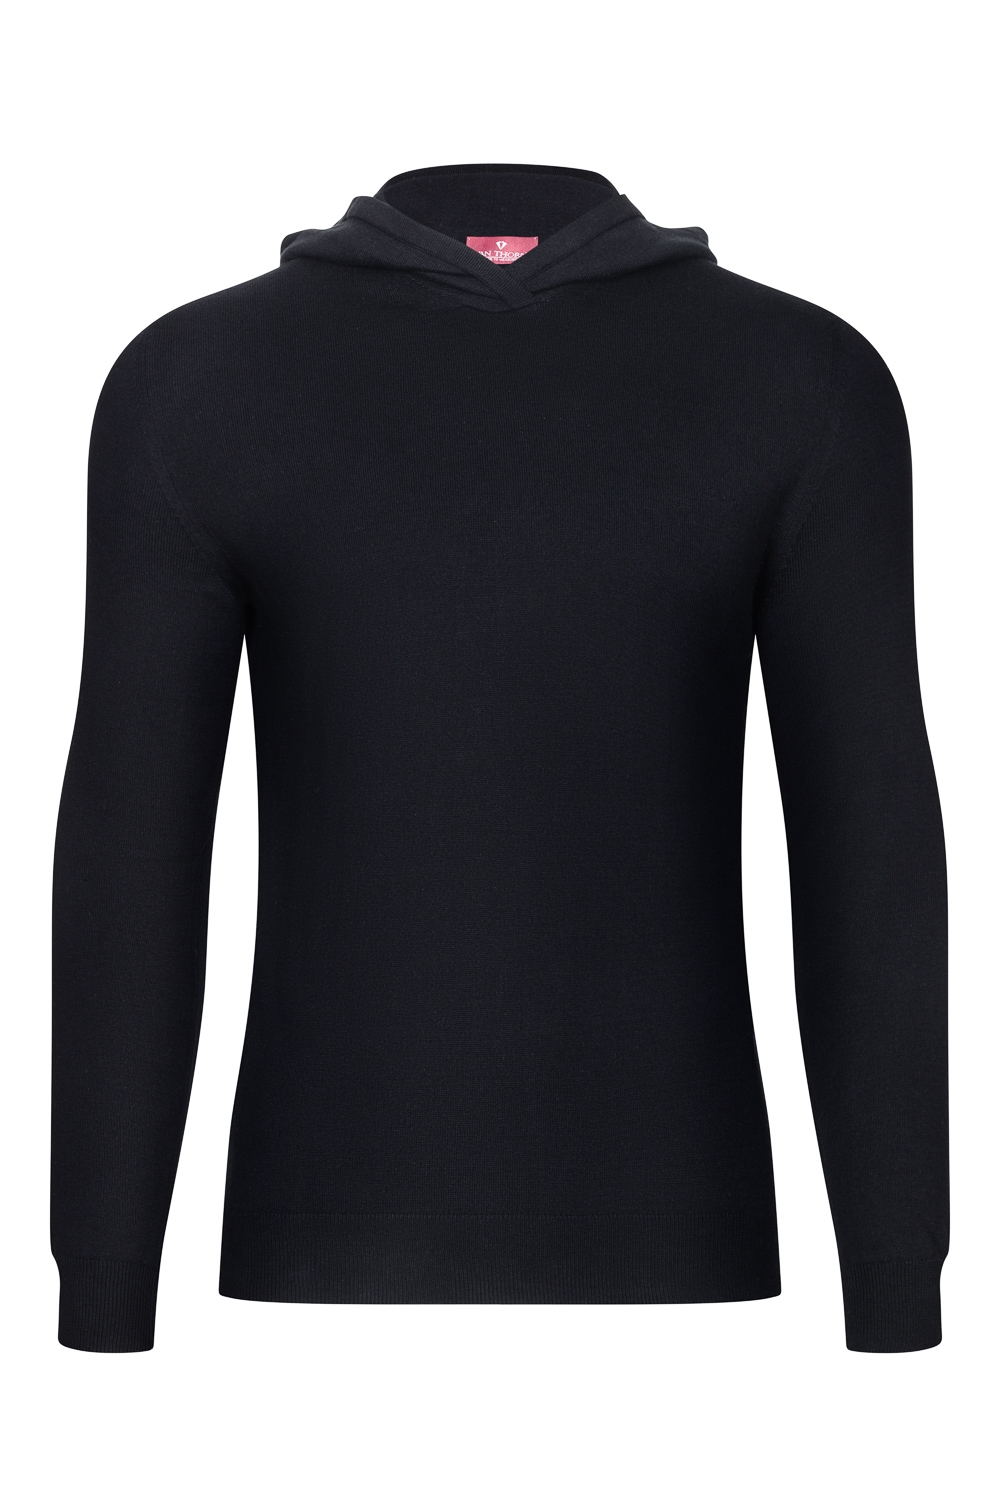 Image of czarny sweter męski bawełniany z kapturem xxs